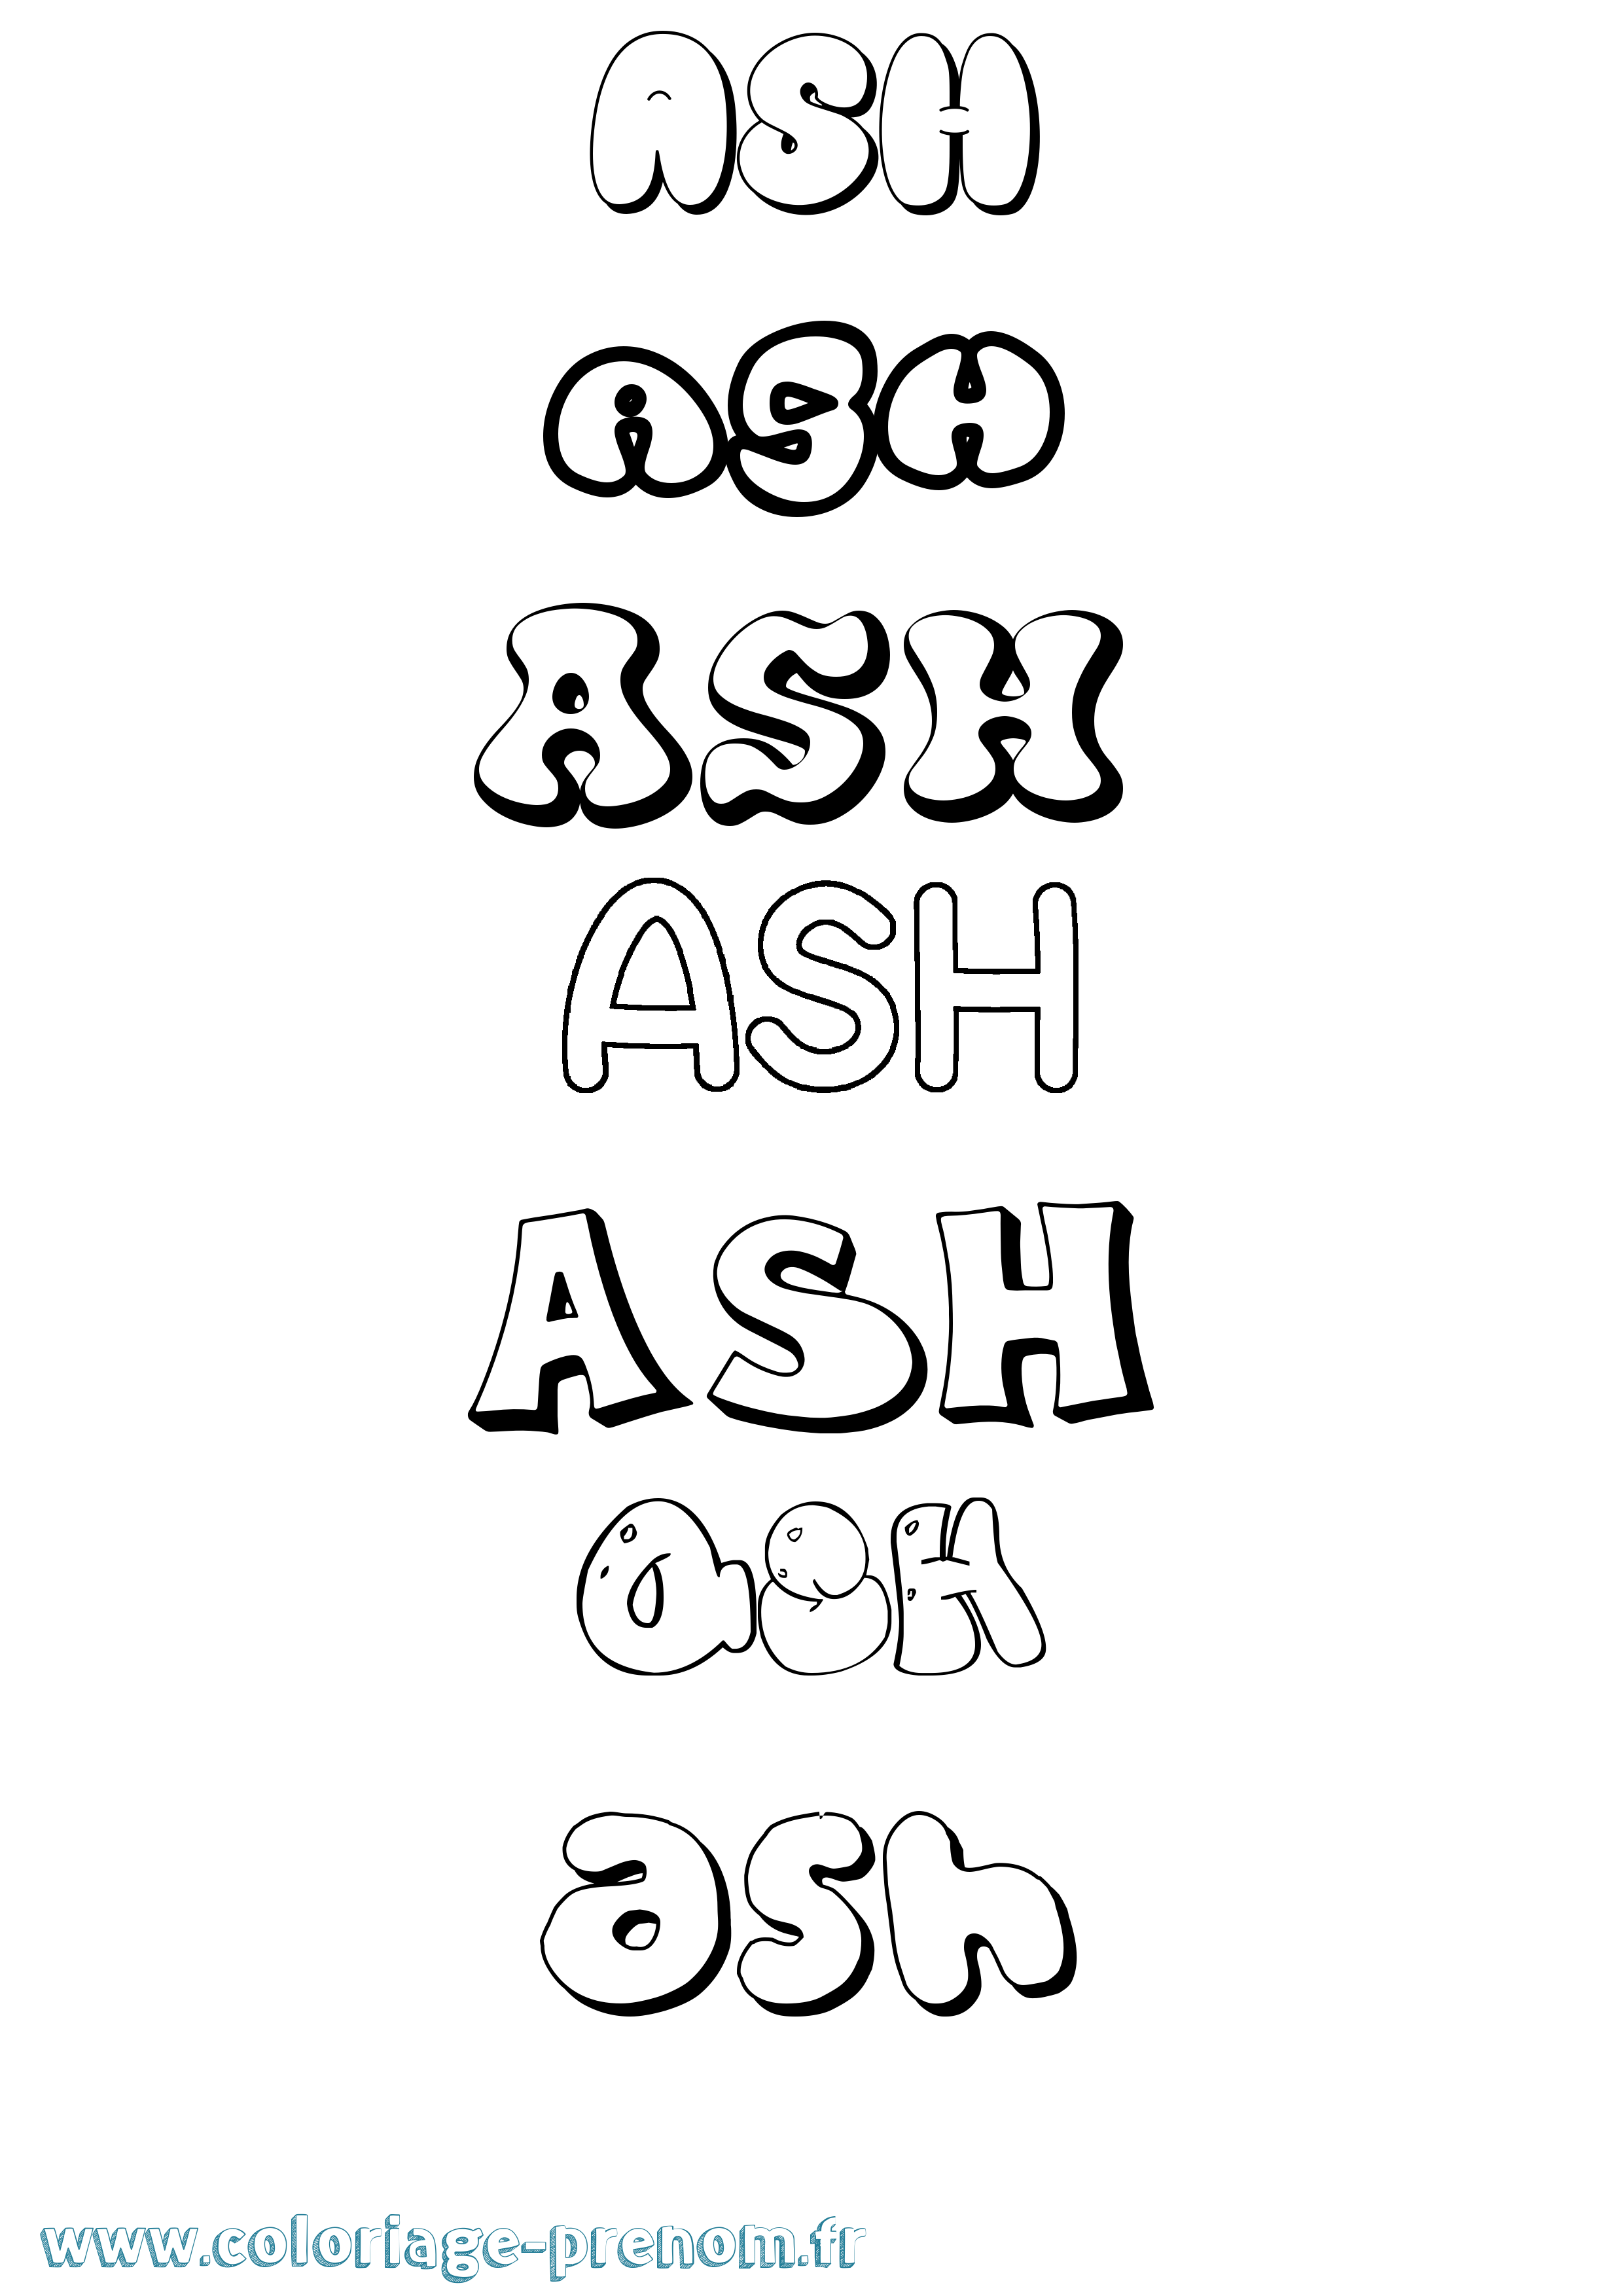 Coloriage prénom Ash Bubble